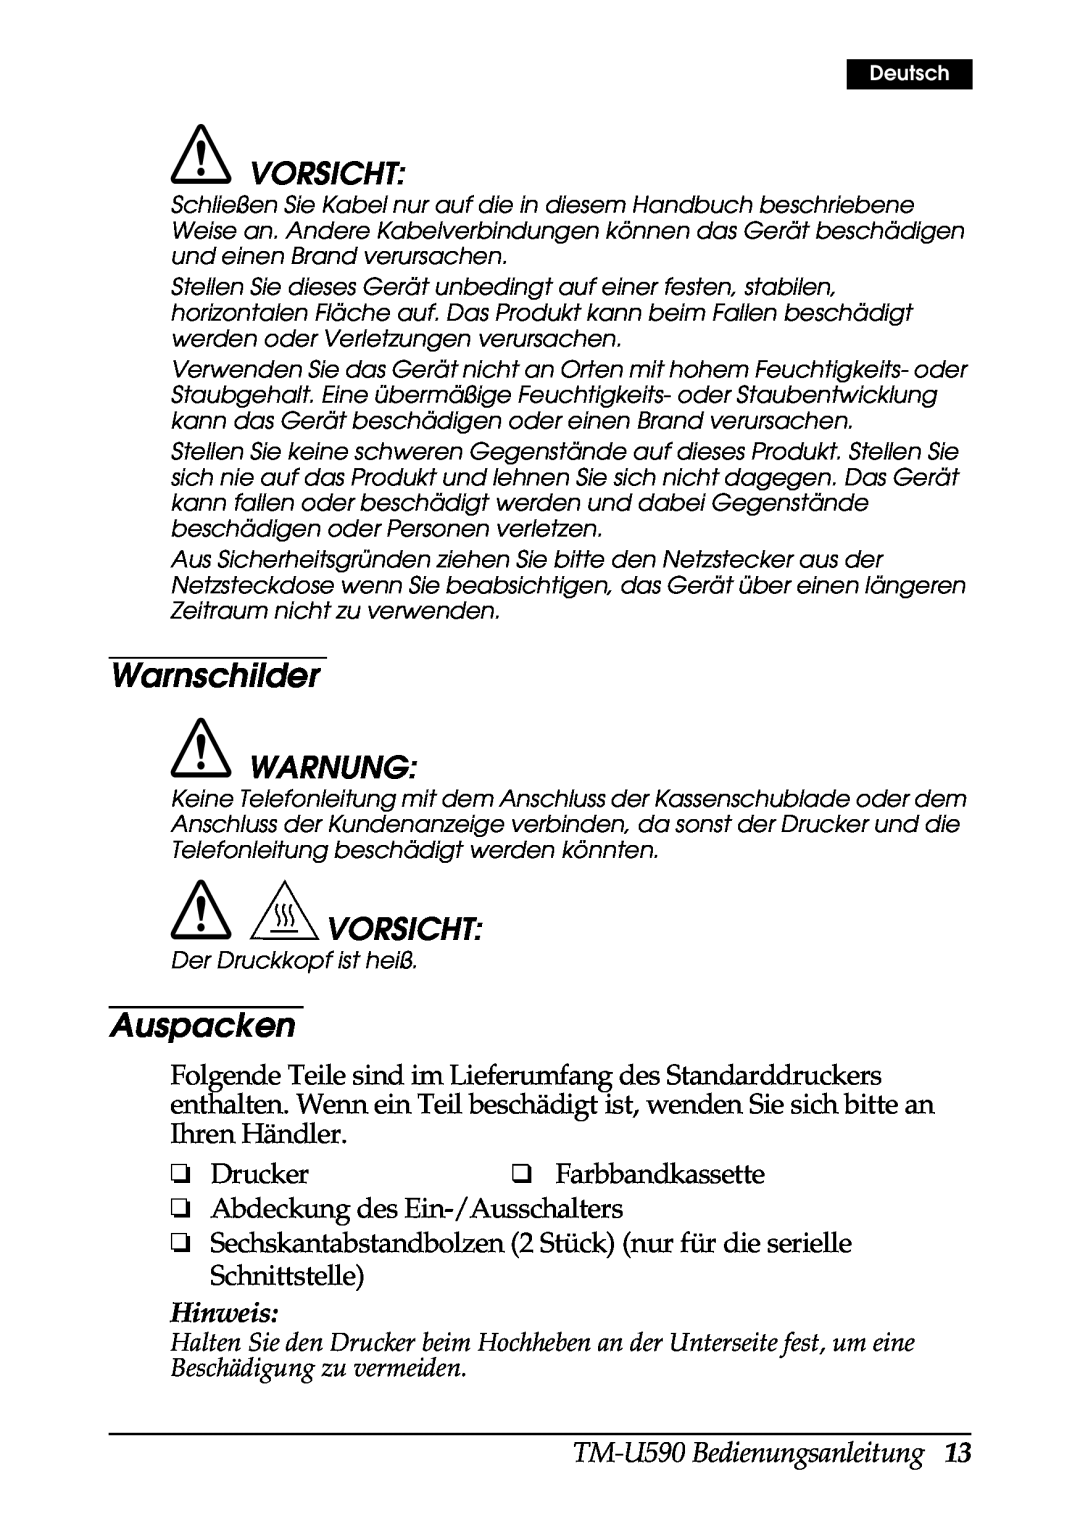 FARGO electronic user manual Warnschilder, Auspacken, Vorsicht, Hinweis, TM-U590 Bedienungsanleitung, Warnung 